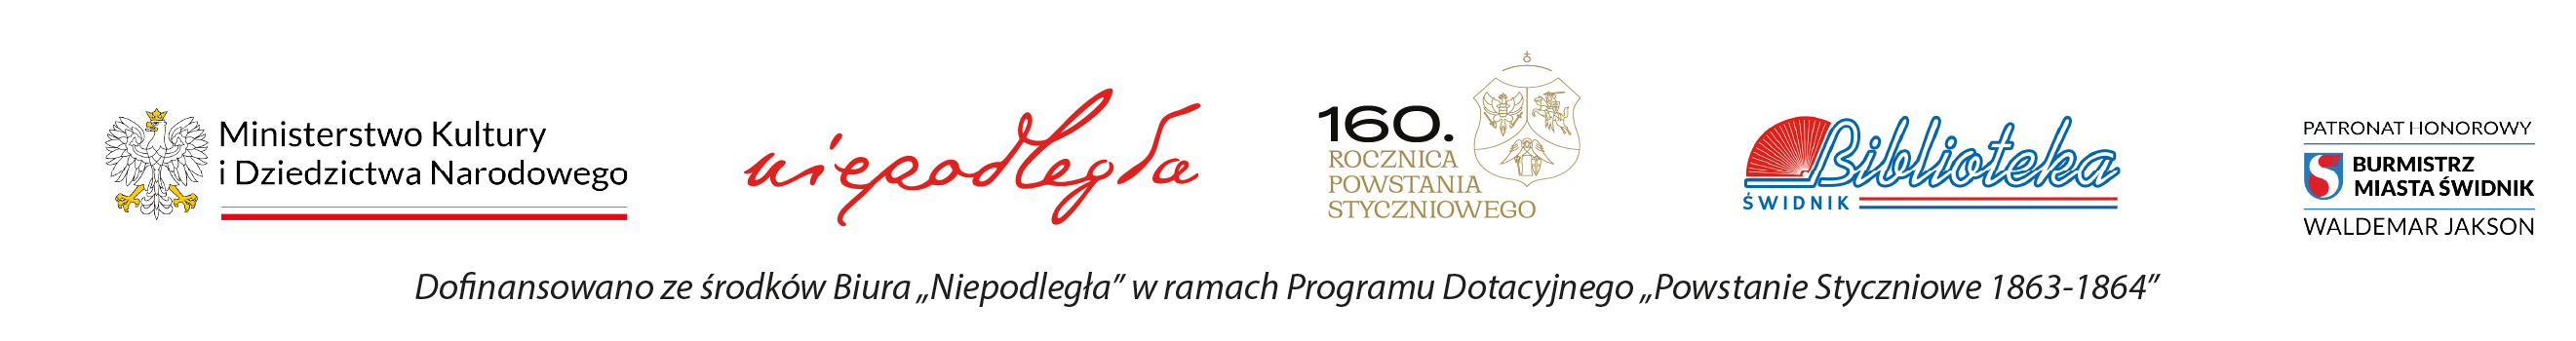 belka z logami ministerstwa kultury, Niepodległej, 160.rocznicy Powstania Styczniowego i logo burmistrza Świdnika